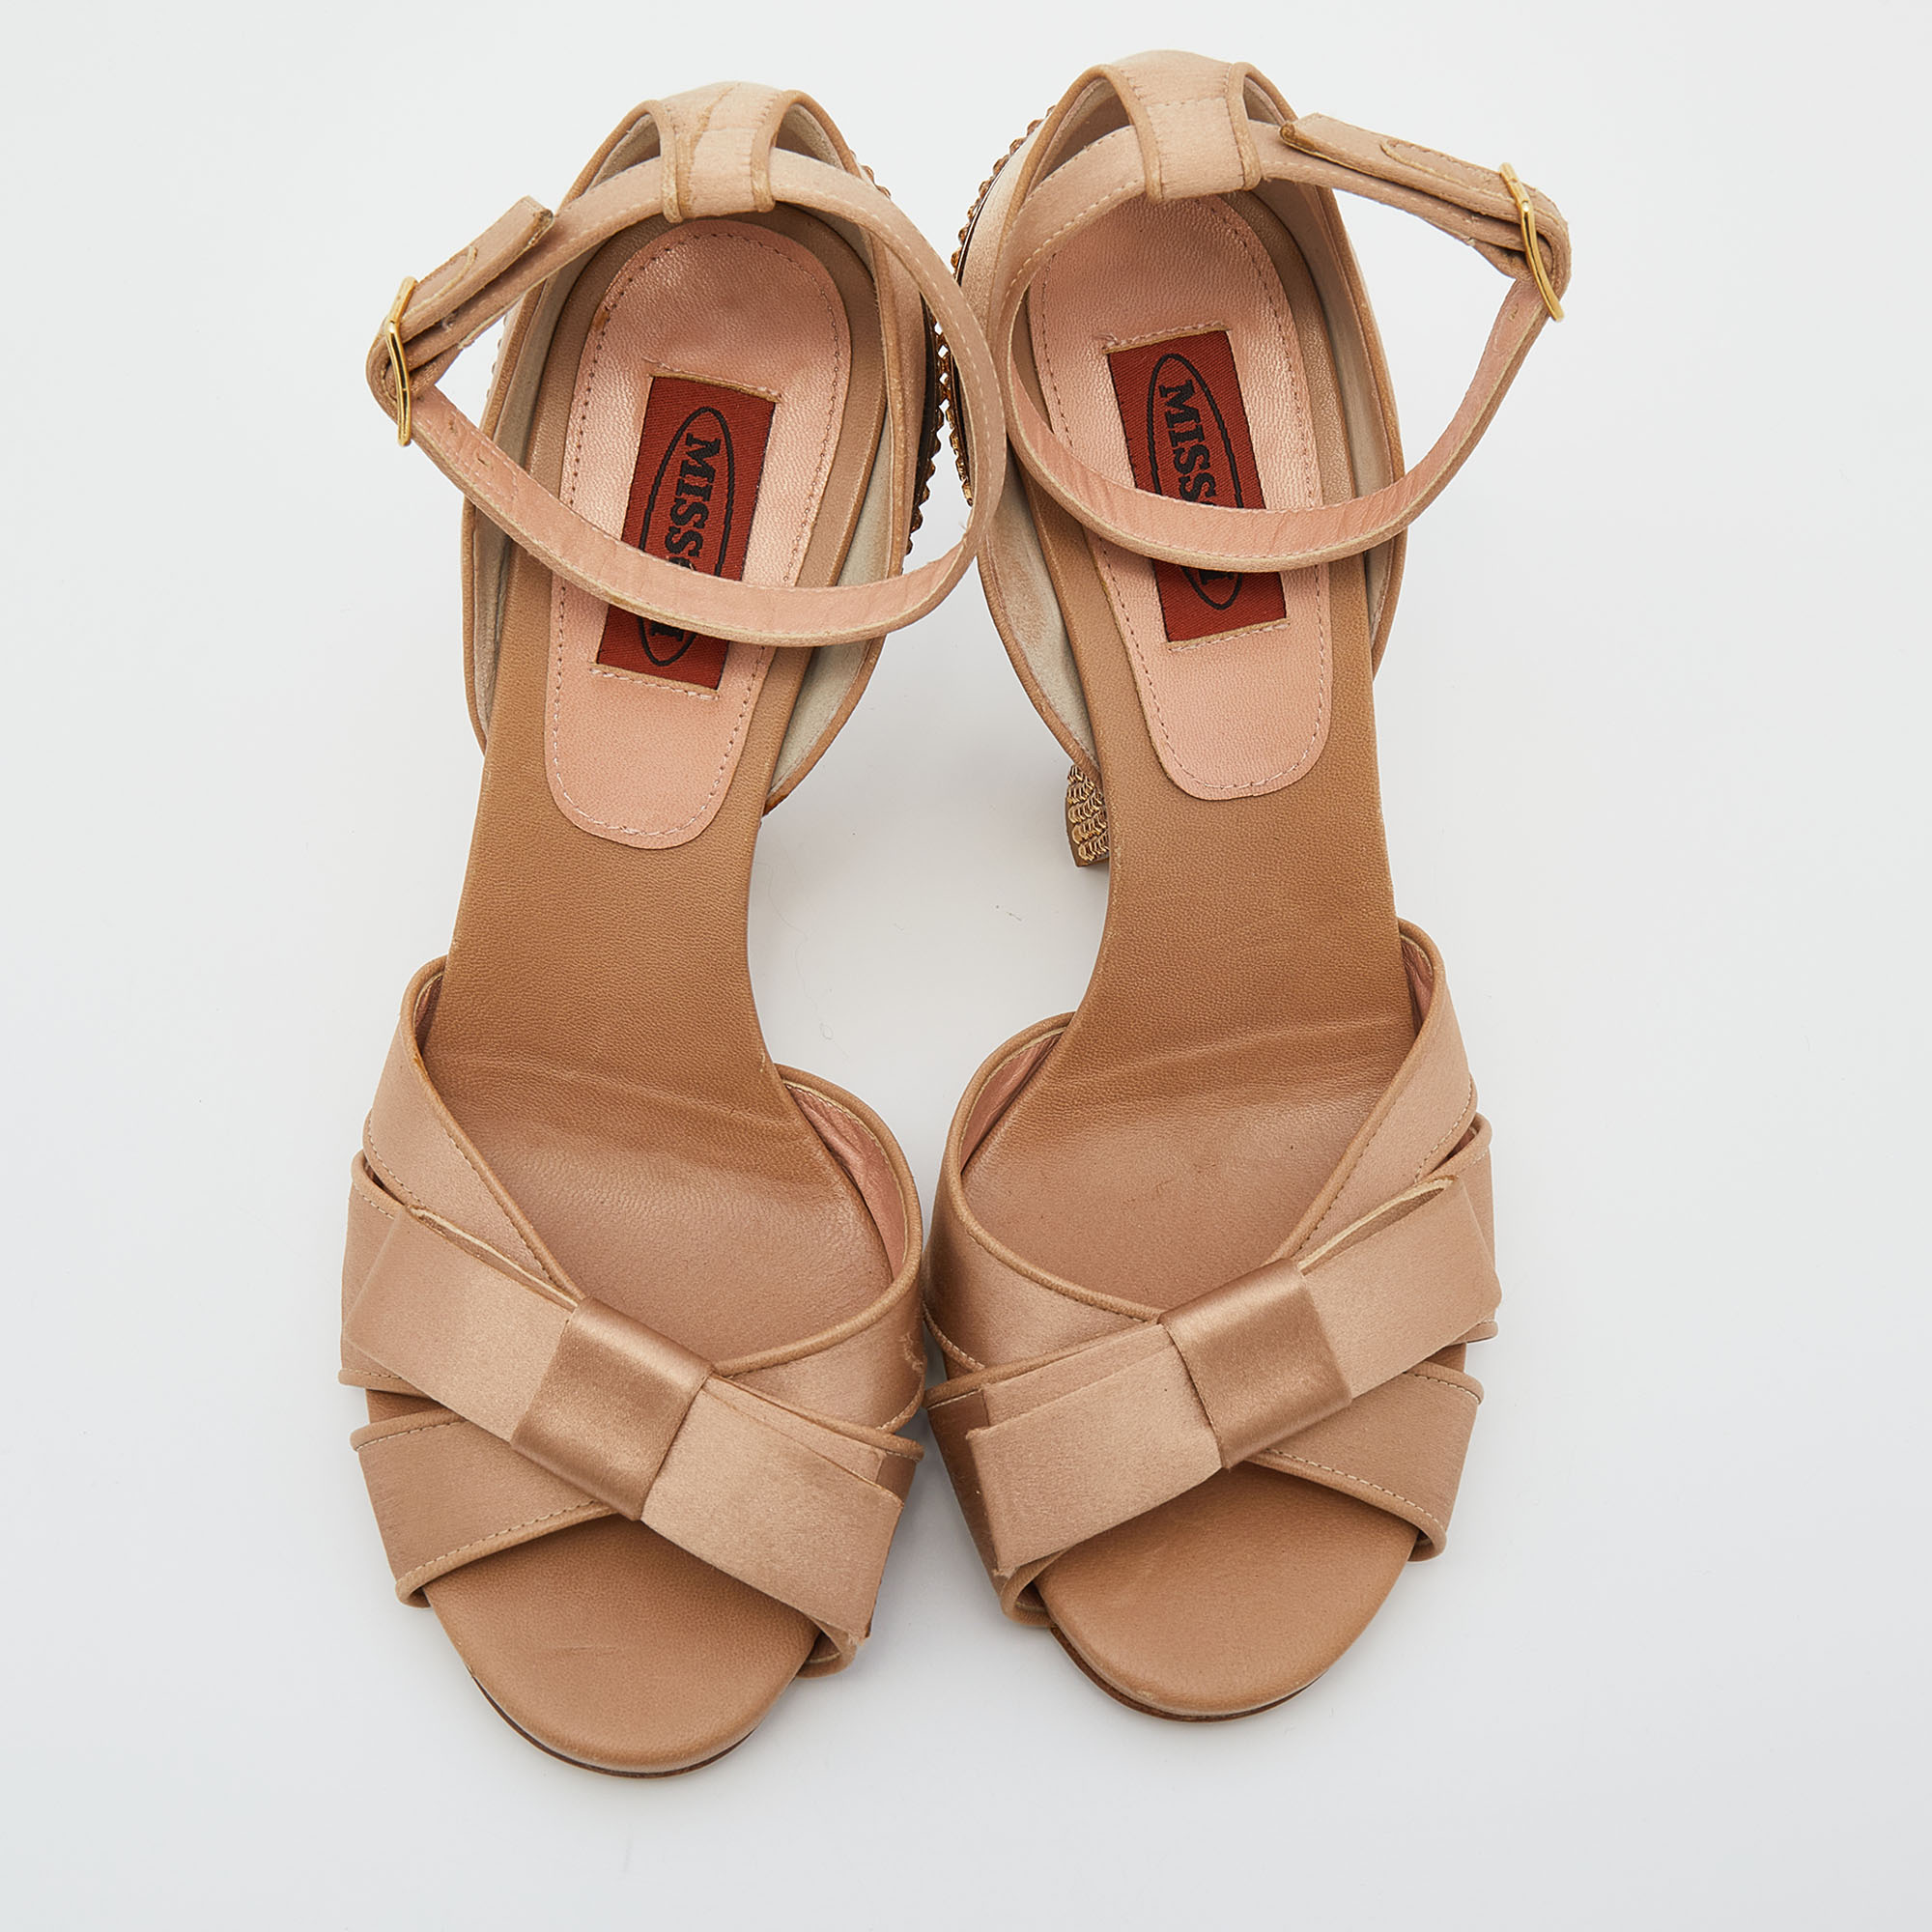 Missoni Beige Satin Crystal Embellished Heel Ankle Strap Sandals Size 38